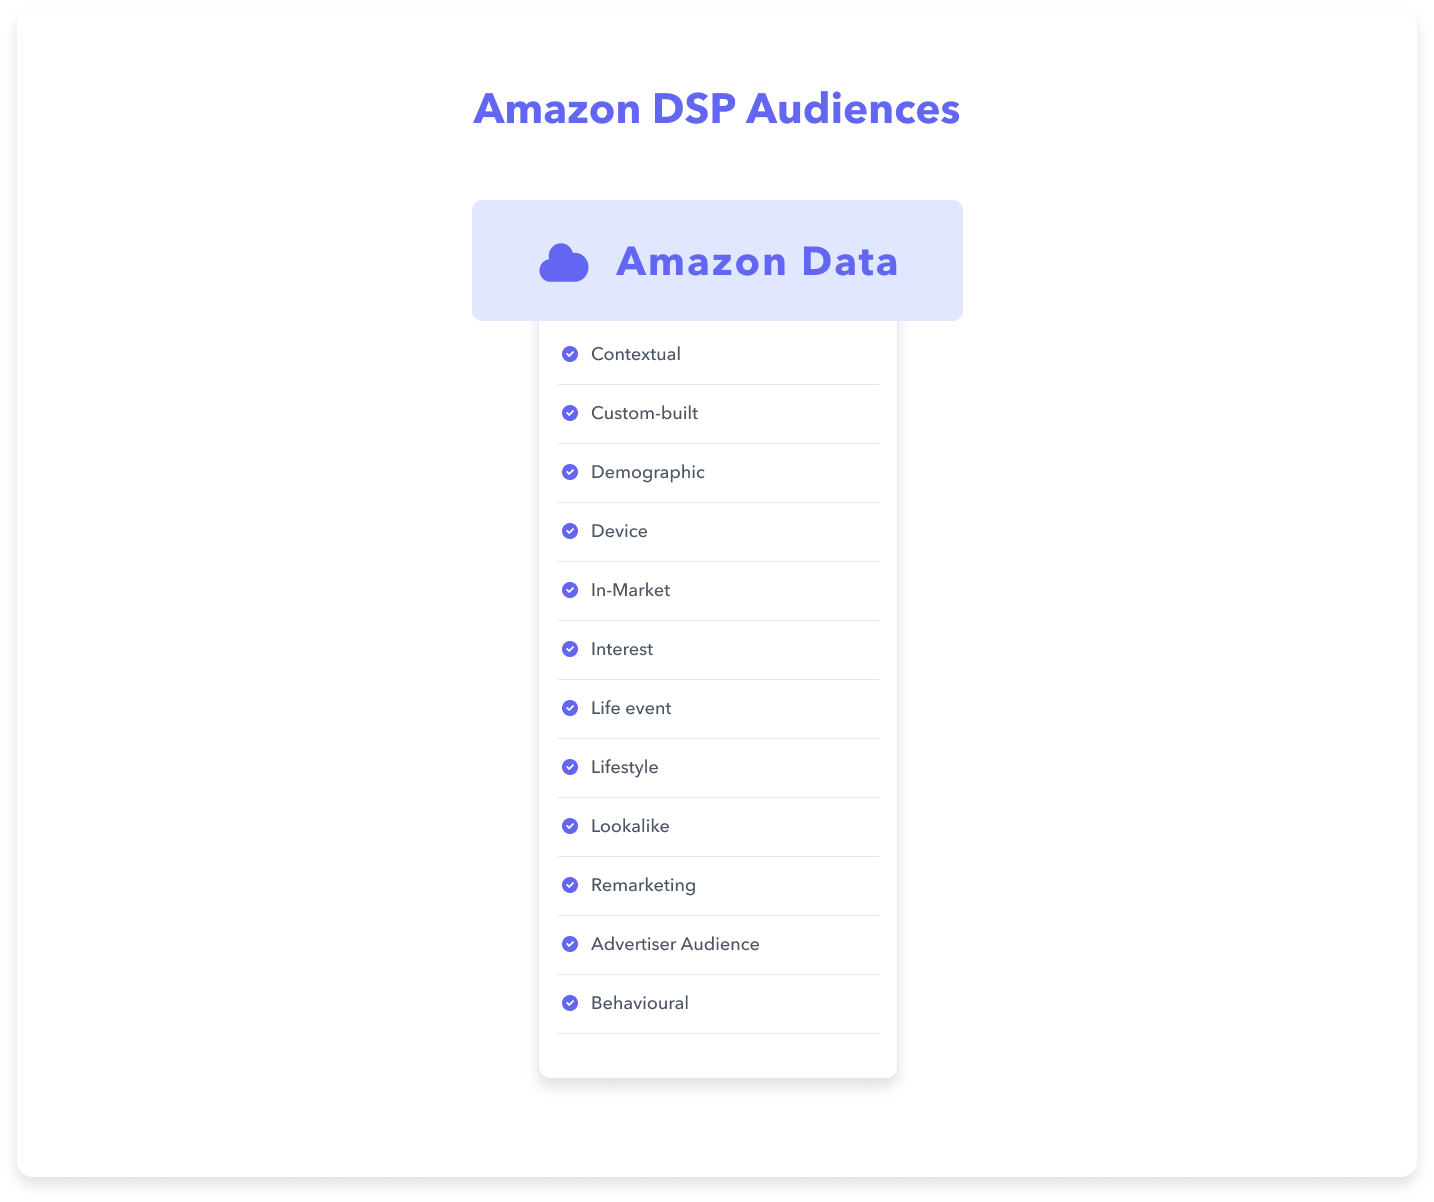 Amazon DSP Audiences